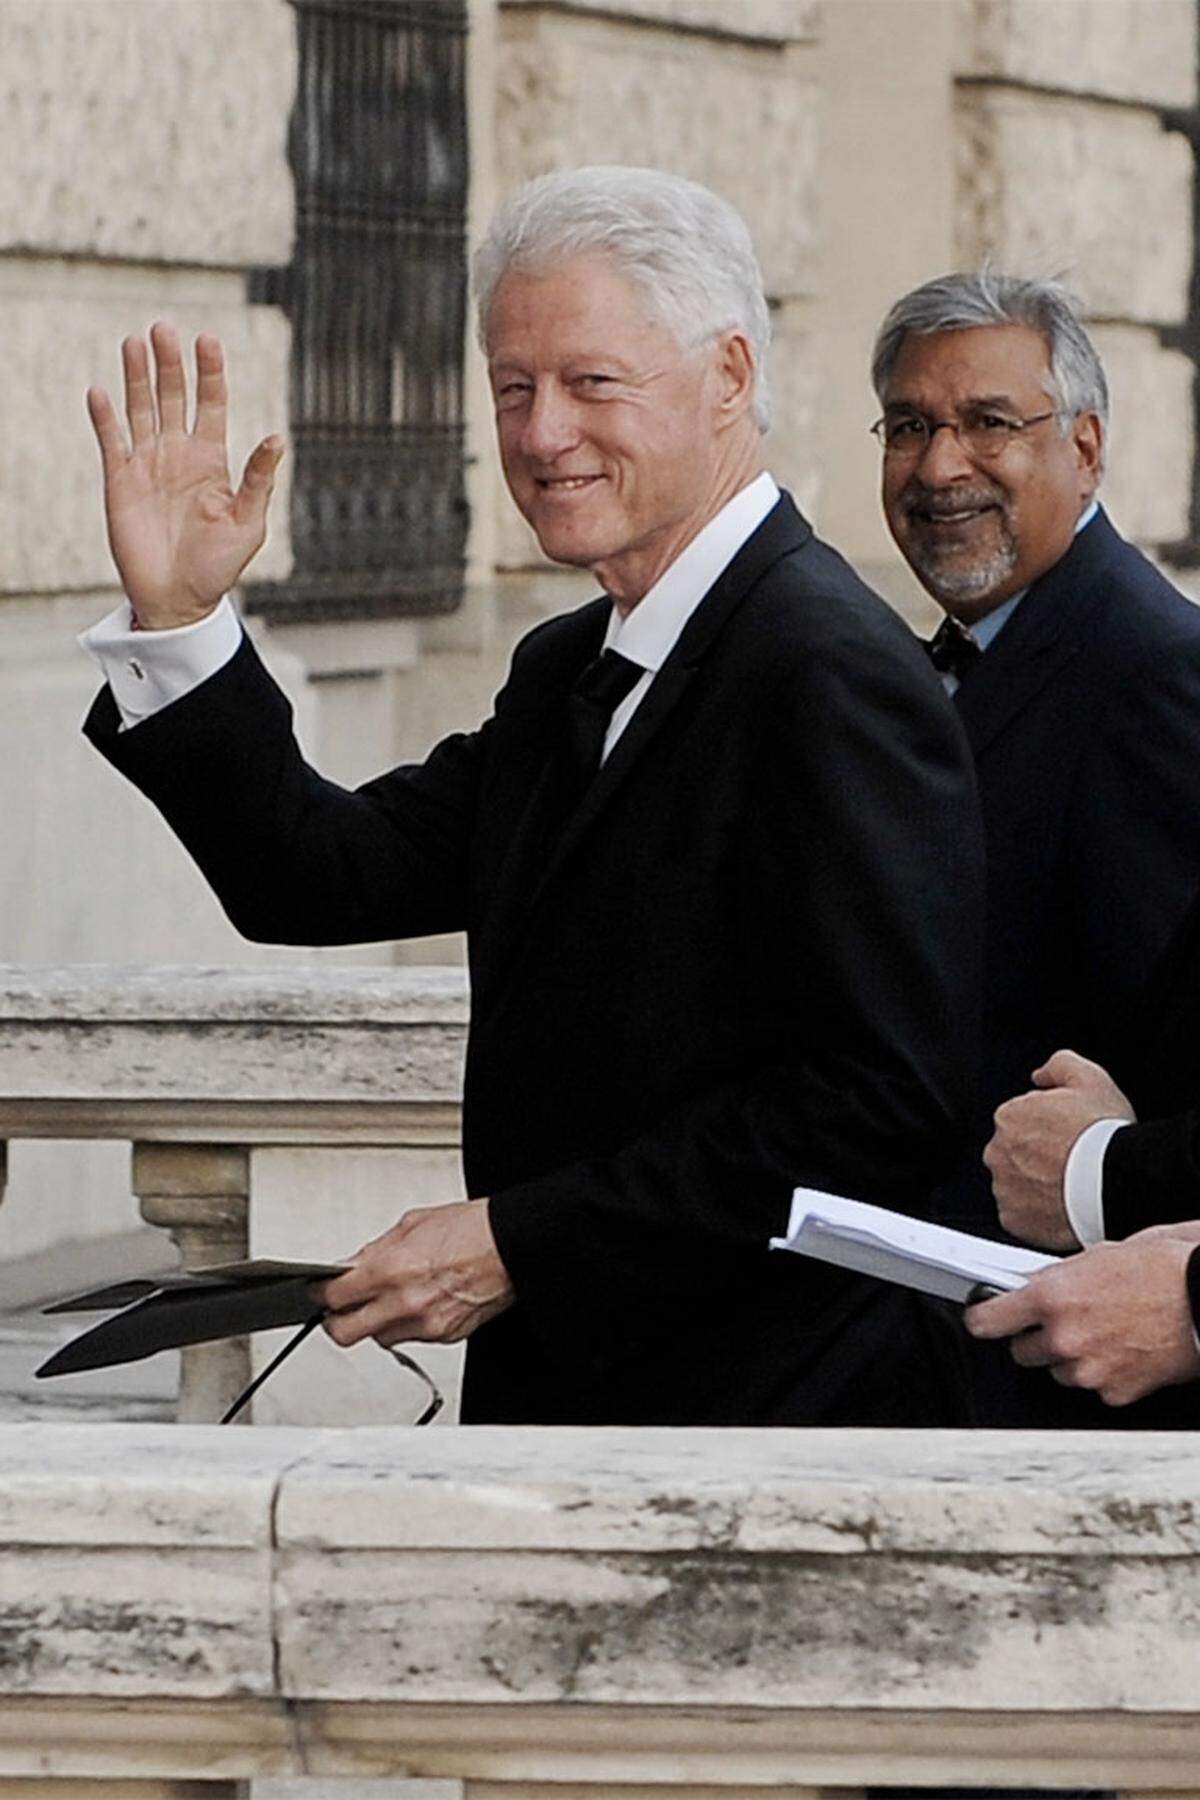 Bedingfield, Hearst, Shields hin oder her - er war der wahre Ehrengast des Abends - der frühere US-Präsident Bill Clinton nahm ebenfalls an der Gala teil, als Präsident der William J. Clinton Foundation sammelt er seit Jahren Geld für den Kampf gegen HIV/AIDS.